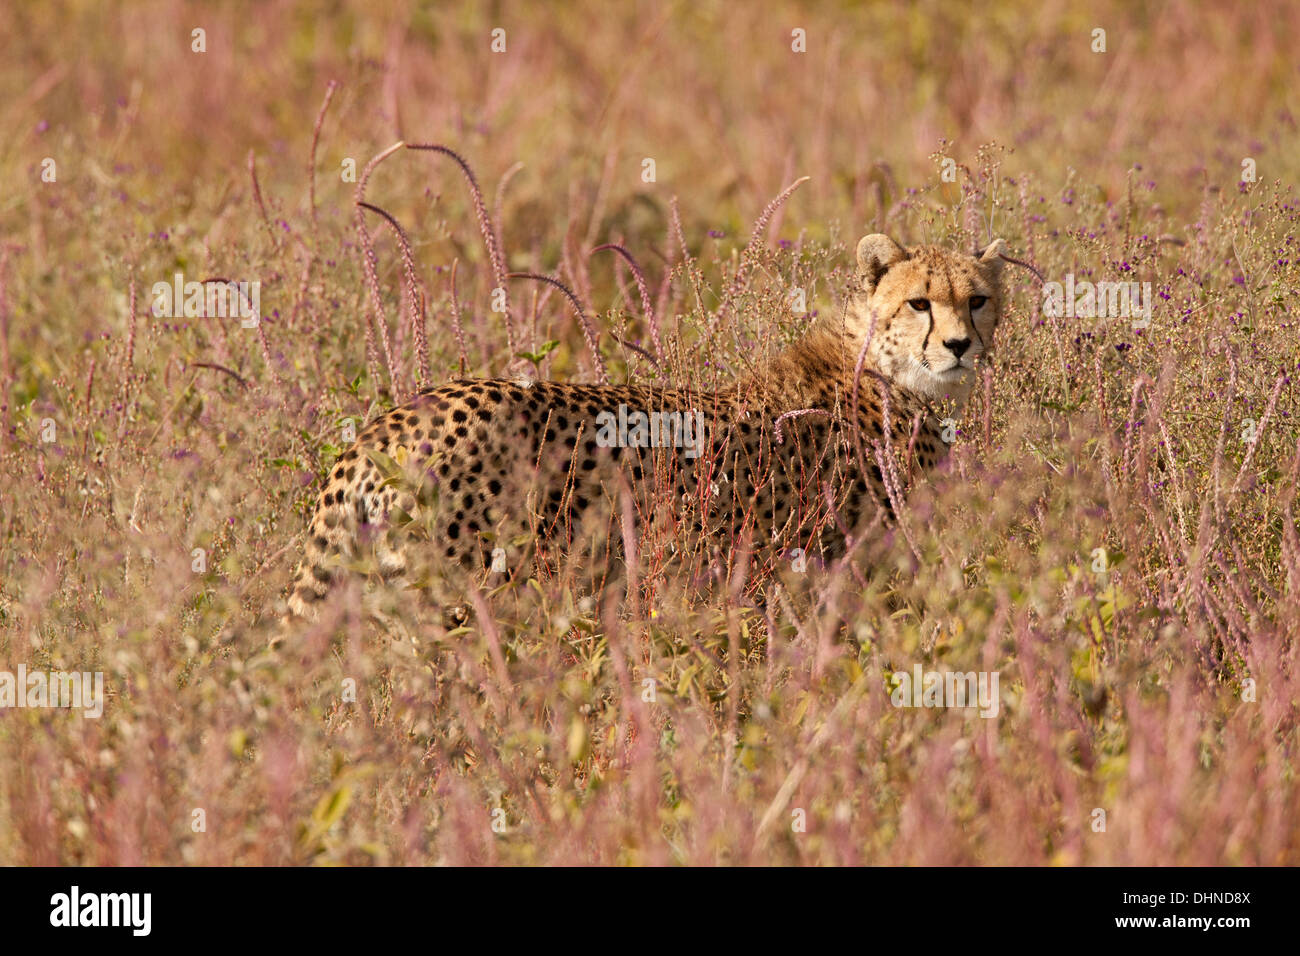 Cheetah in High Grass and Flowers, Tanzania, Serengeti Stock Photo